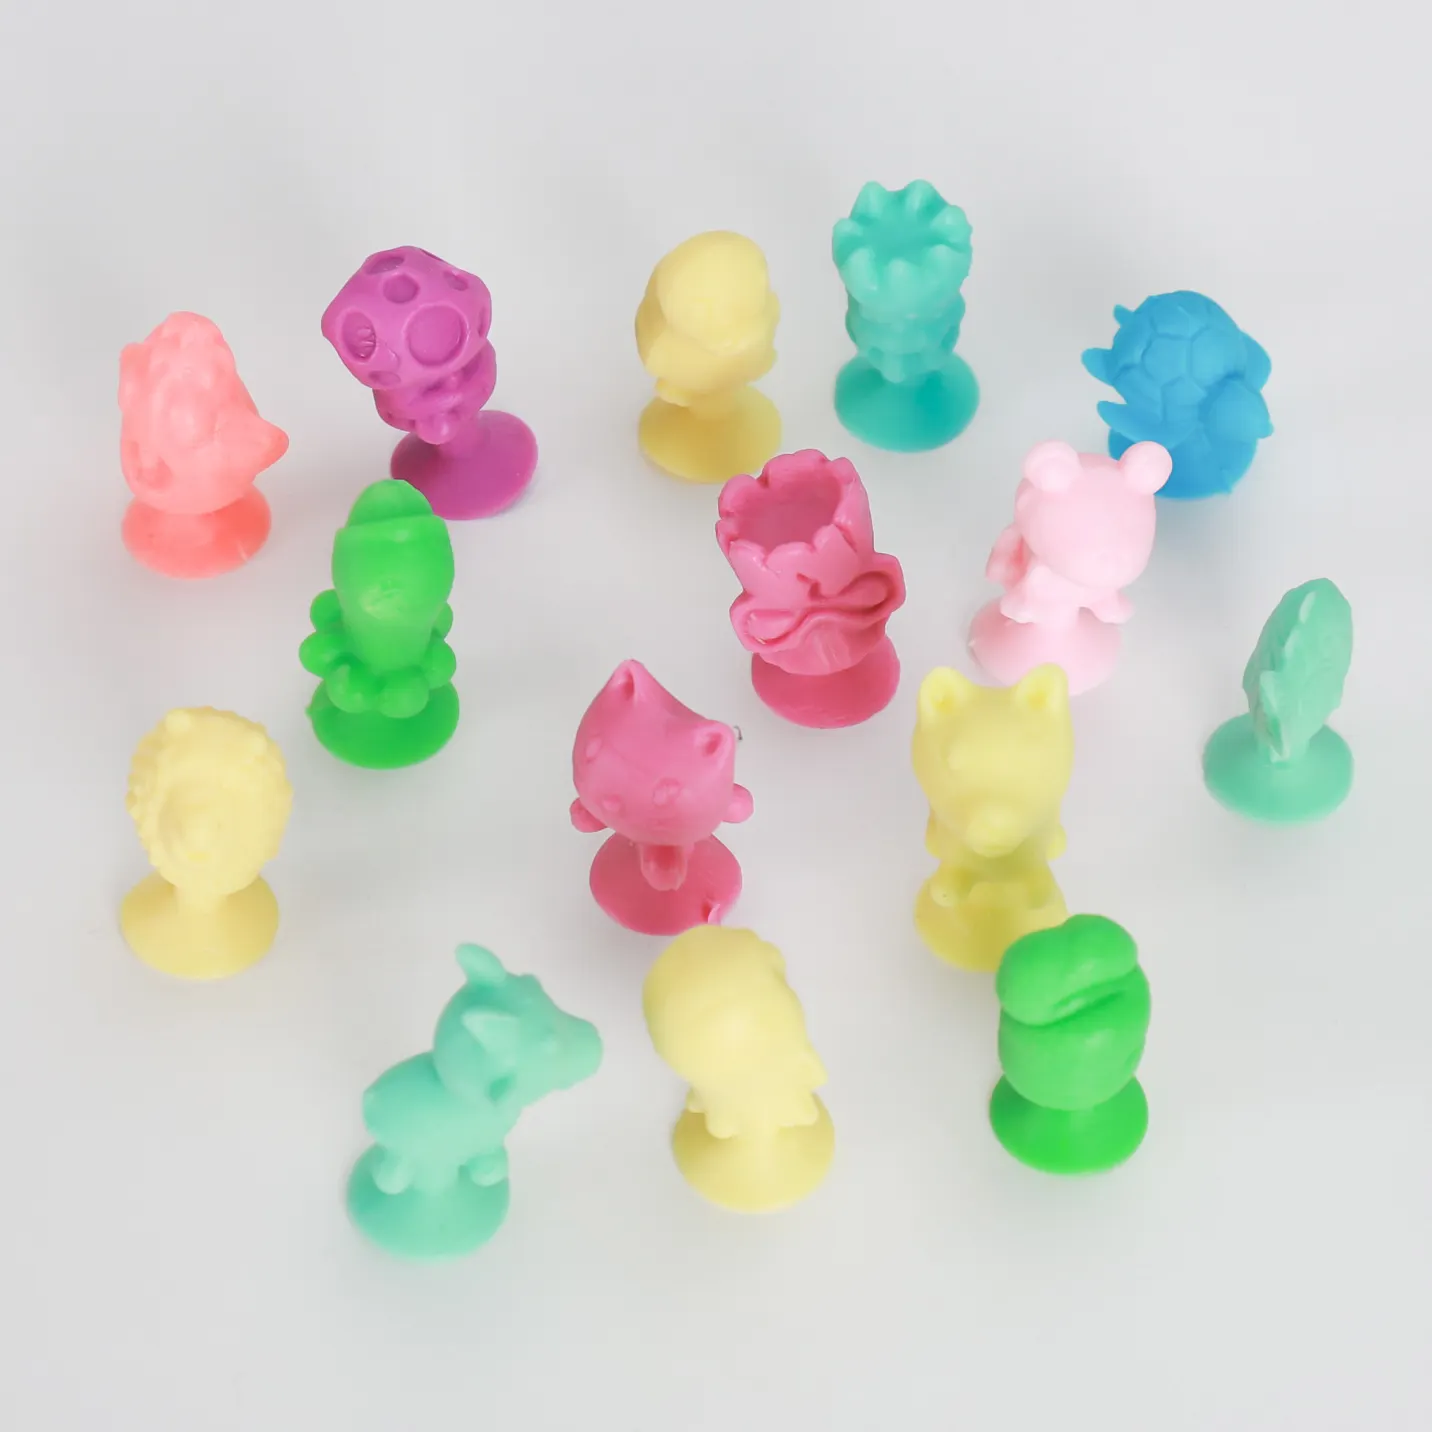 Promosyon küçük kapsül şeker toplama oyuncak TPR yapışkan Mini şekil Stikeez çocuk oyuncakları